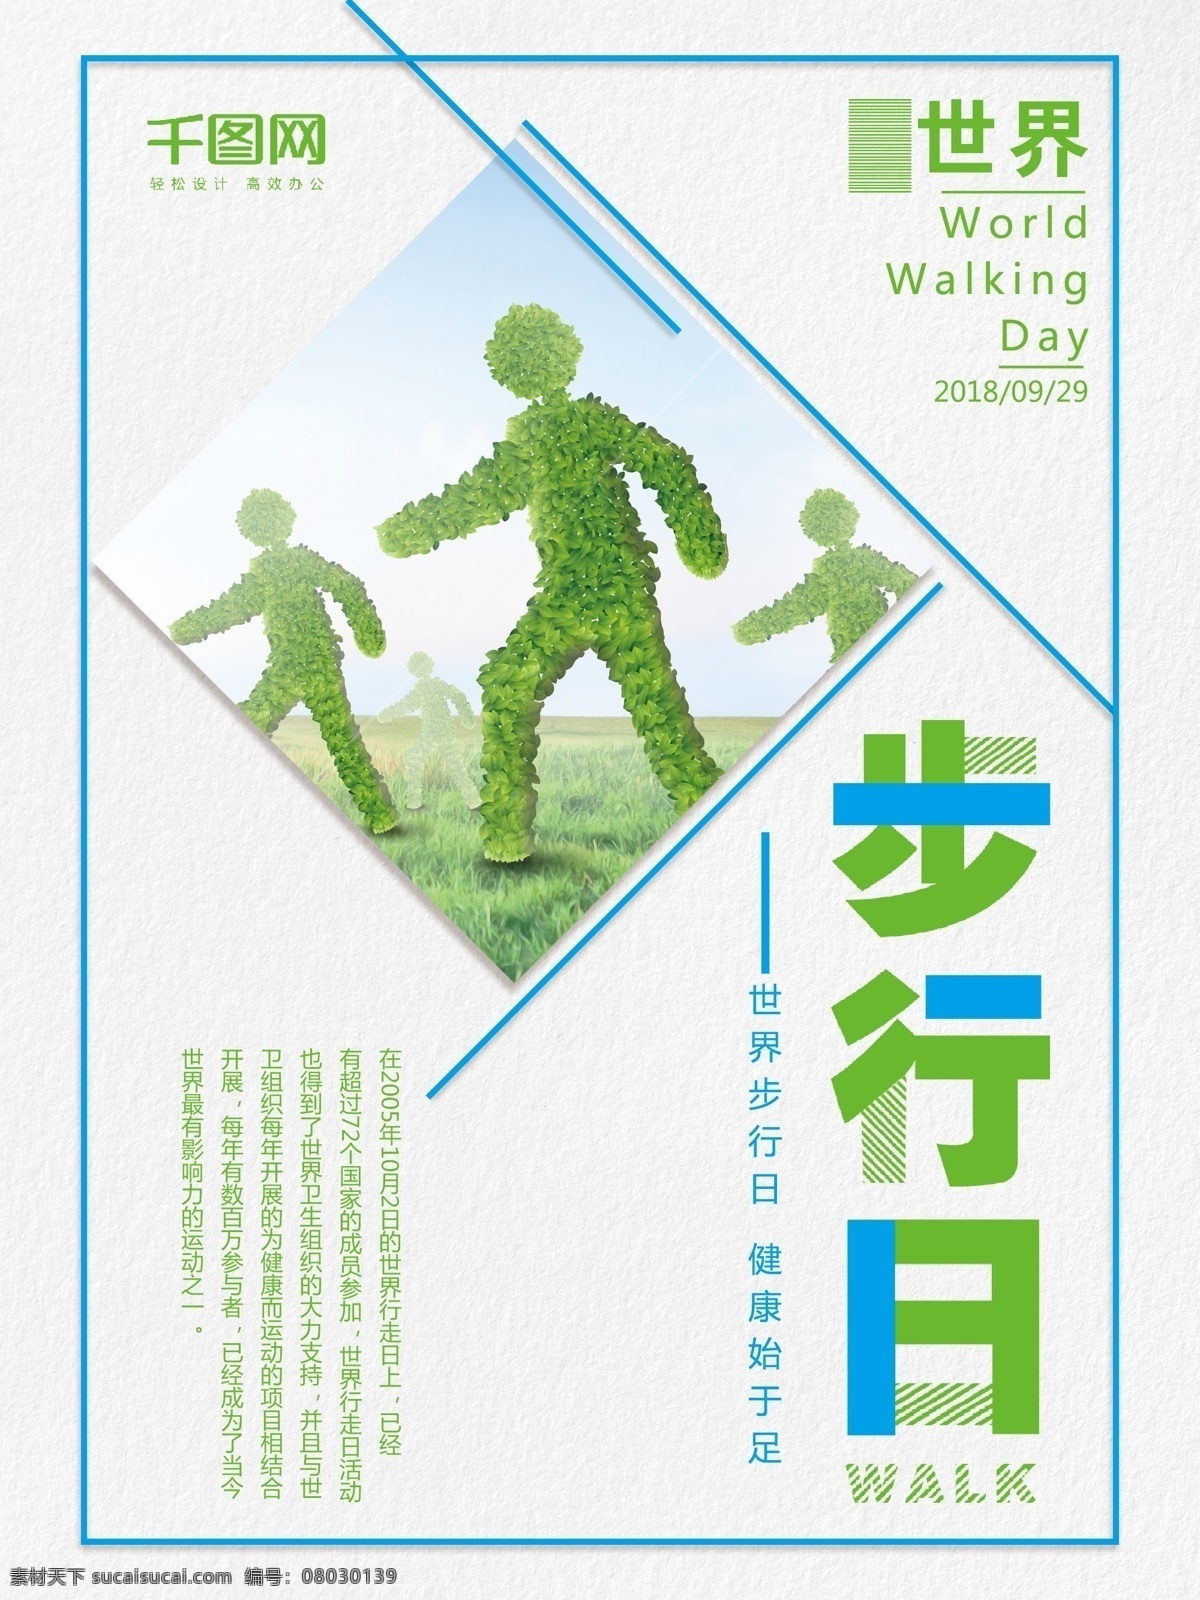 创意 简约 大气 世界 步行 日 宣传海报 宣传 海报 简约风 步行日